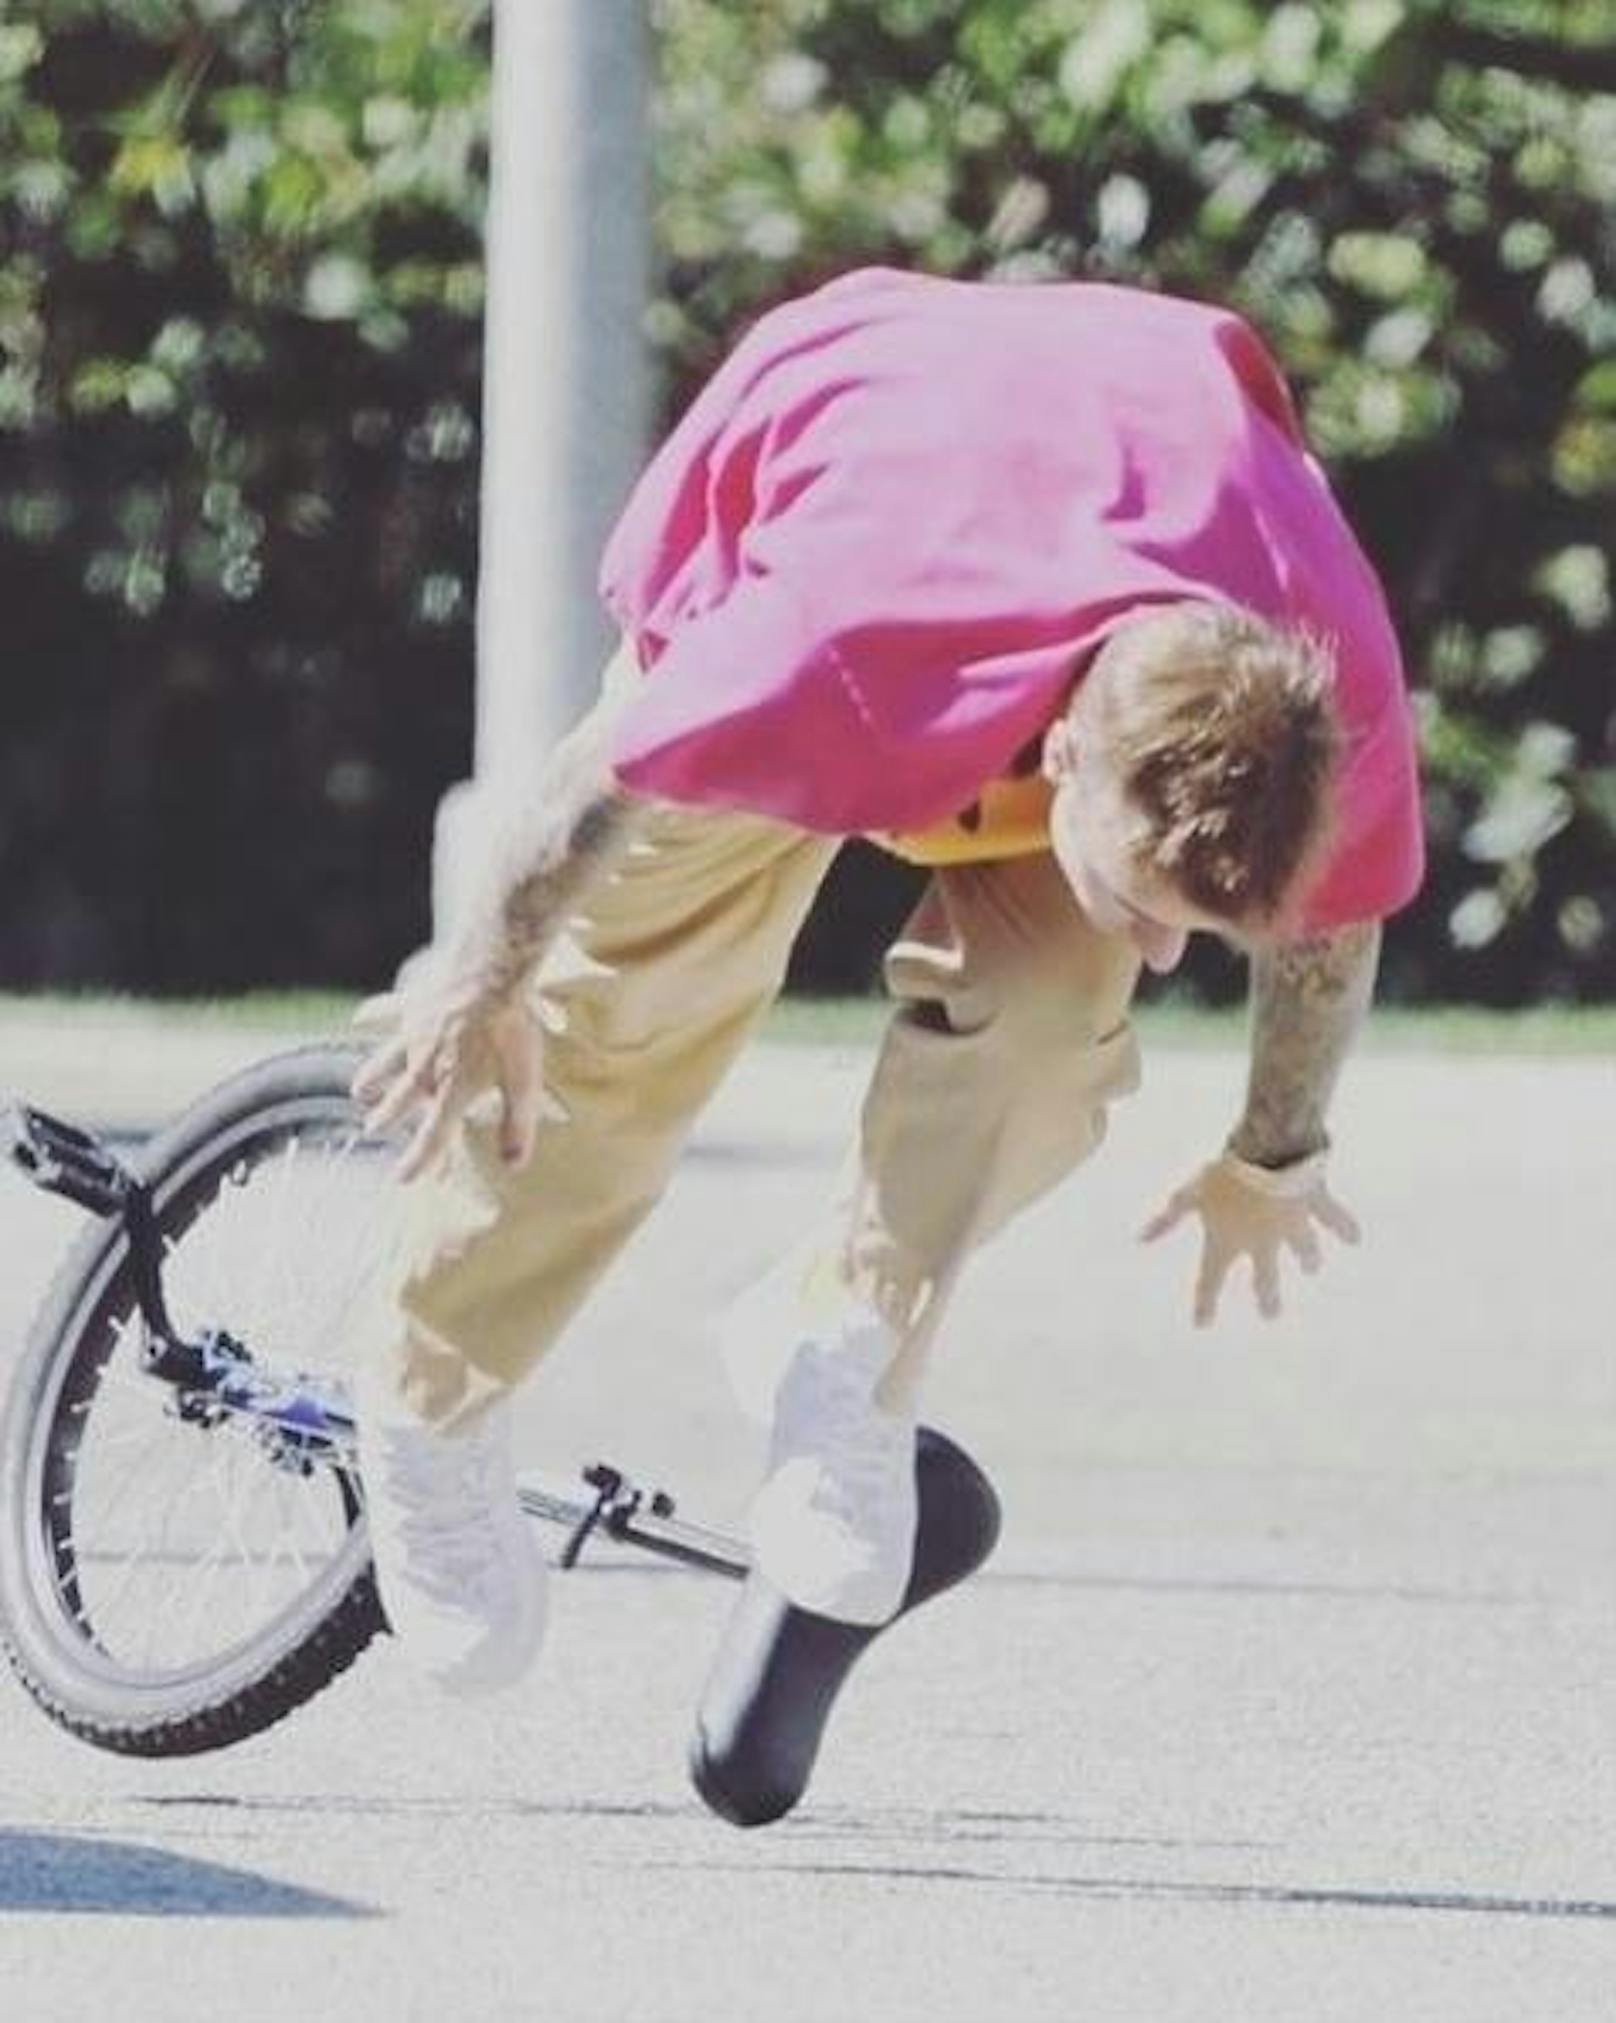 07.01.2020: Justin Bieber war bei seinem Ritt auf einem Einrad wohl noch nicht ganz so sattelfest. Der Fotograf hat im richtigen Moment abgedrückt.